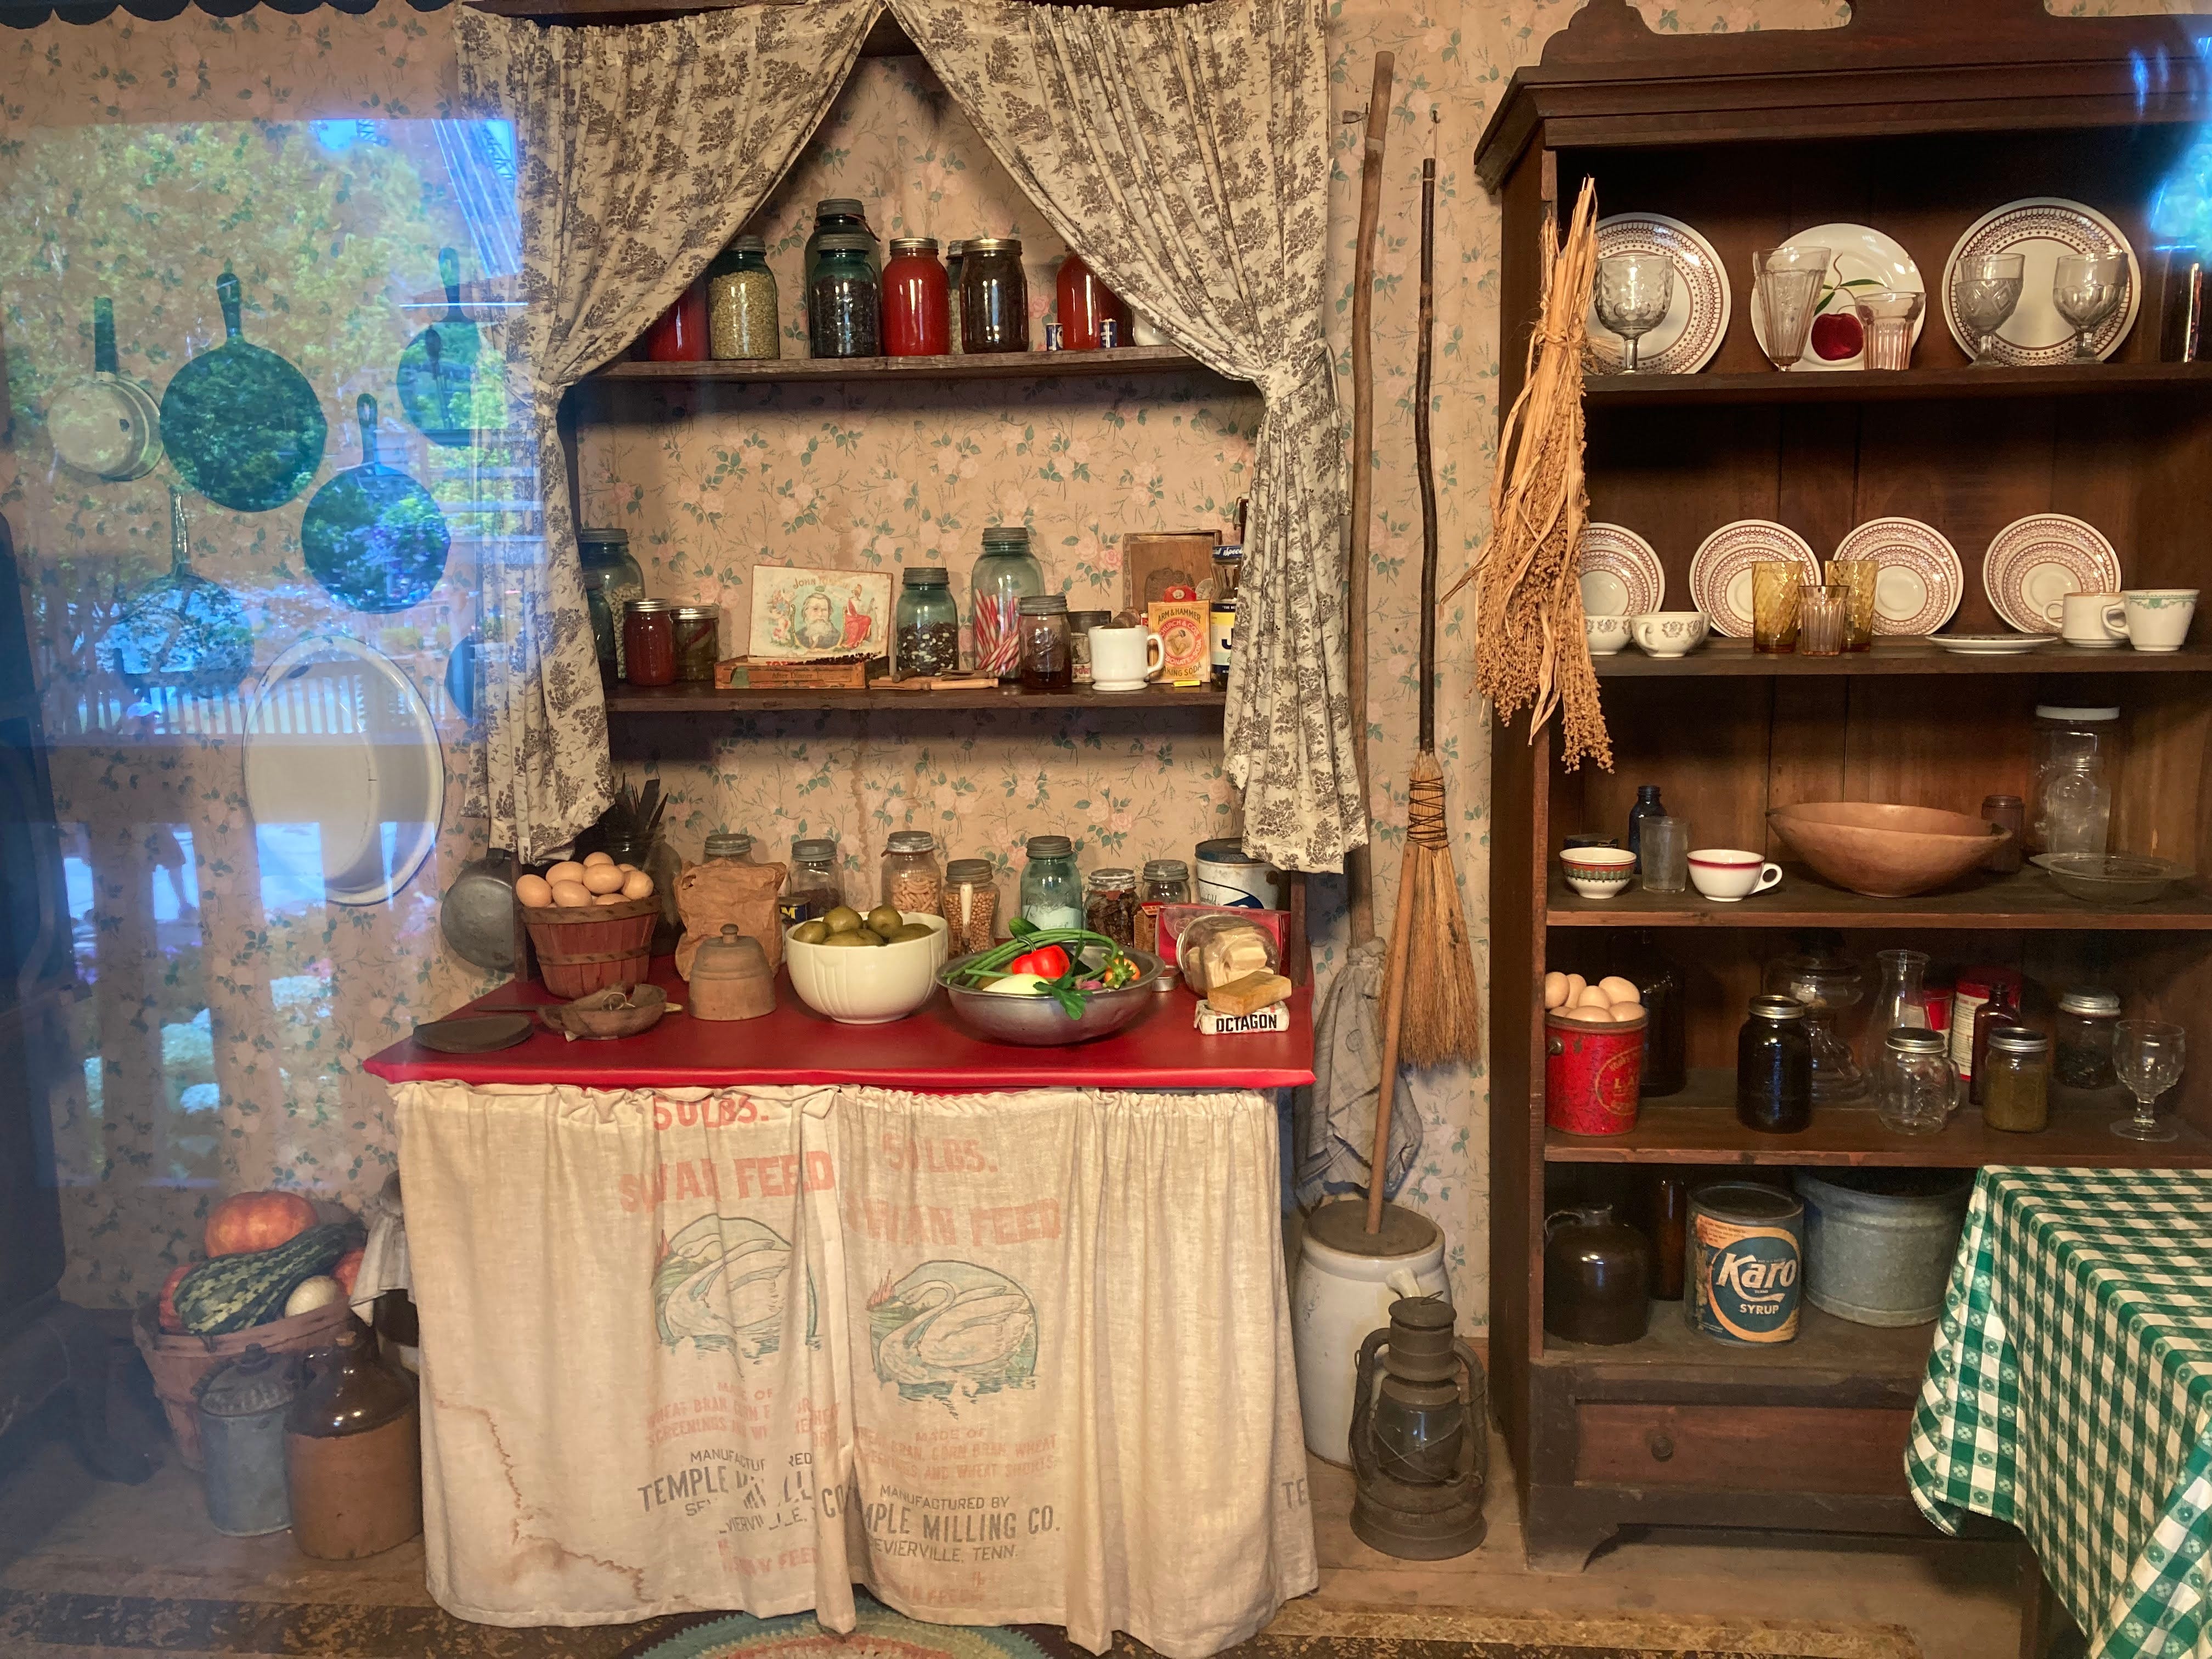 Die Küche in einer Nachbildung von Dolly Partons Elternhaus in Dollywood.